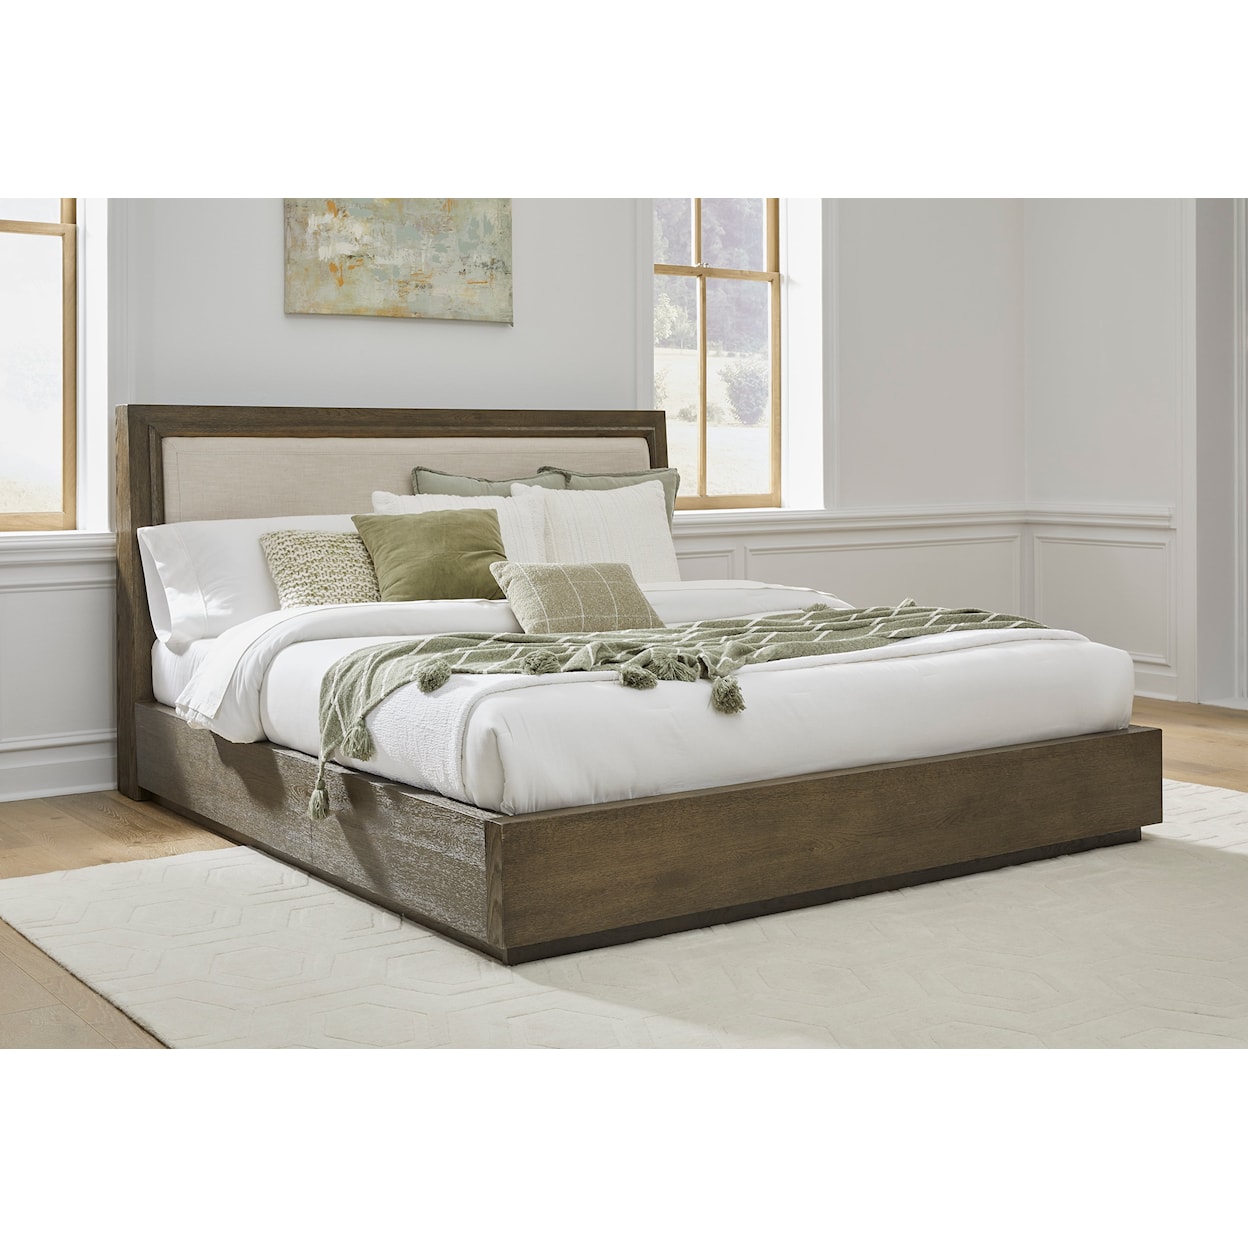 Modus International Lawson King Linen Upholstered Wood Platform Bed